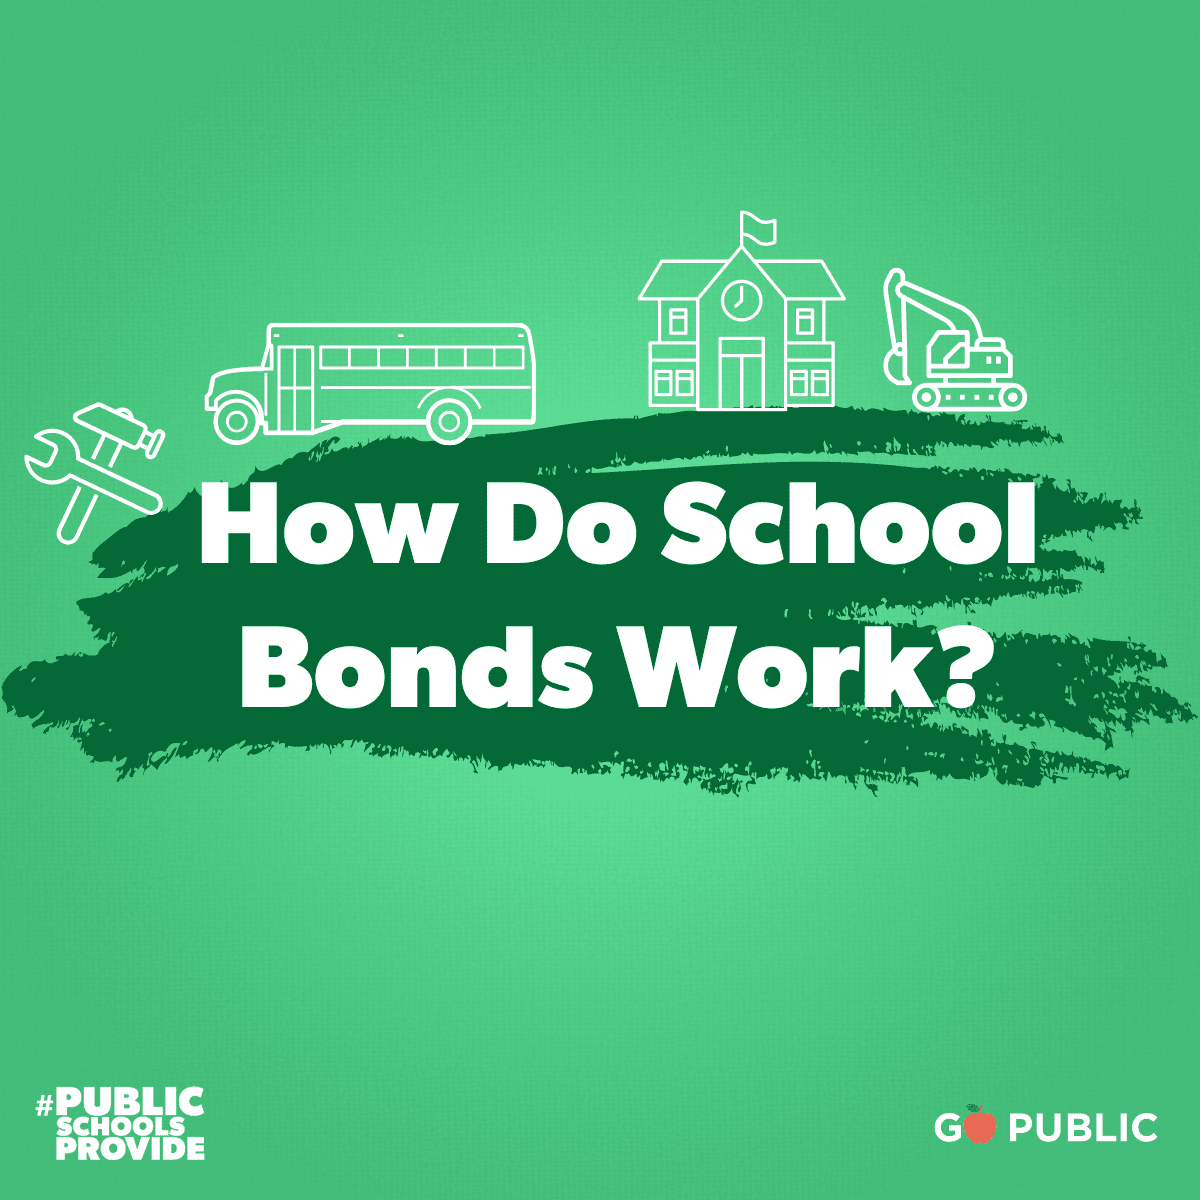 How do school bonds work?